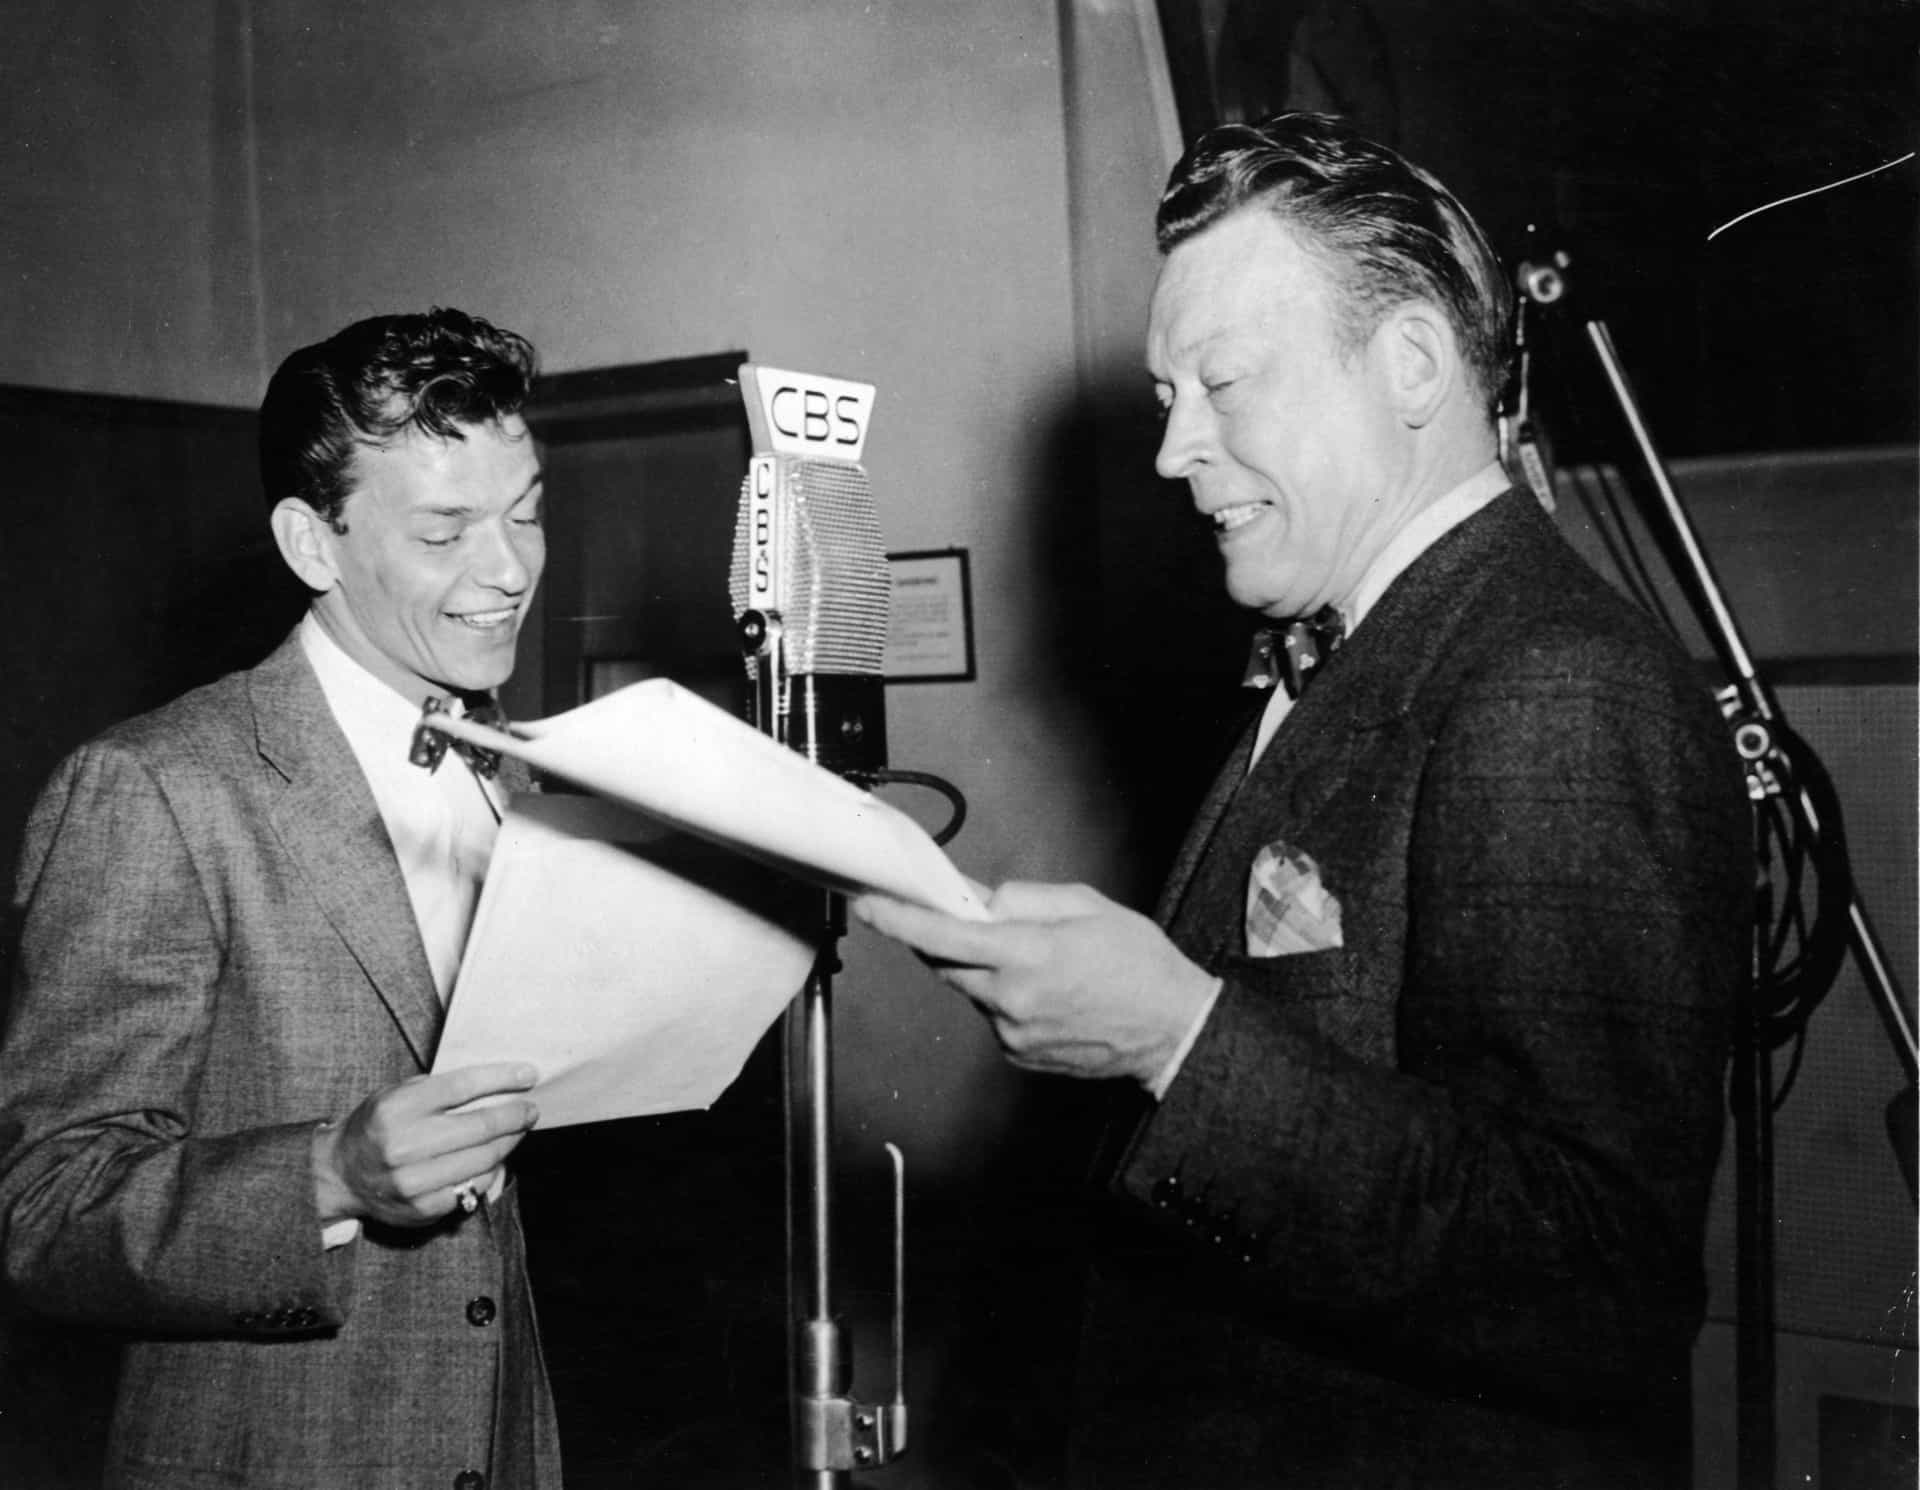 Frank probt ein Skript in einem Rundfunkstudio mit dem amerikanischen Komiker Fred Allen.